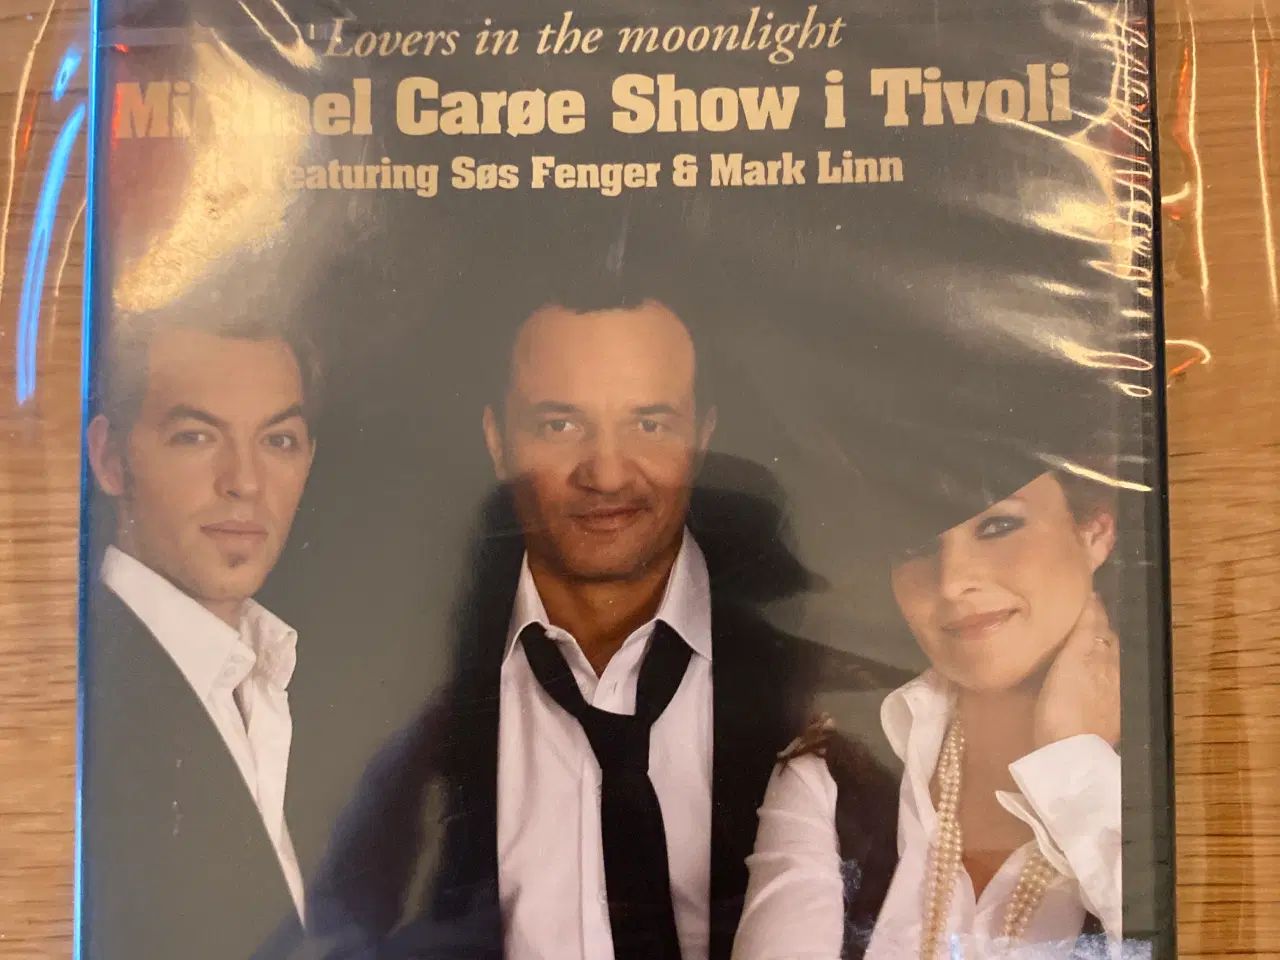 Billede 1 - Michael Carøe Show i Tivoli